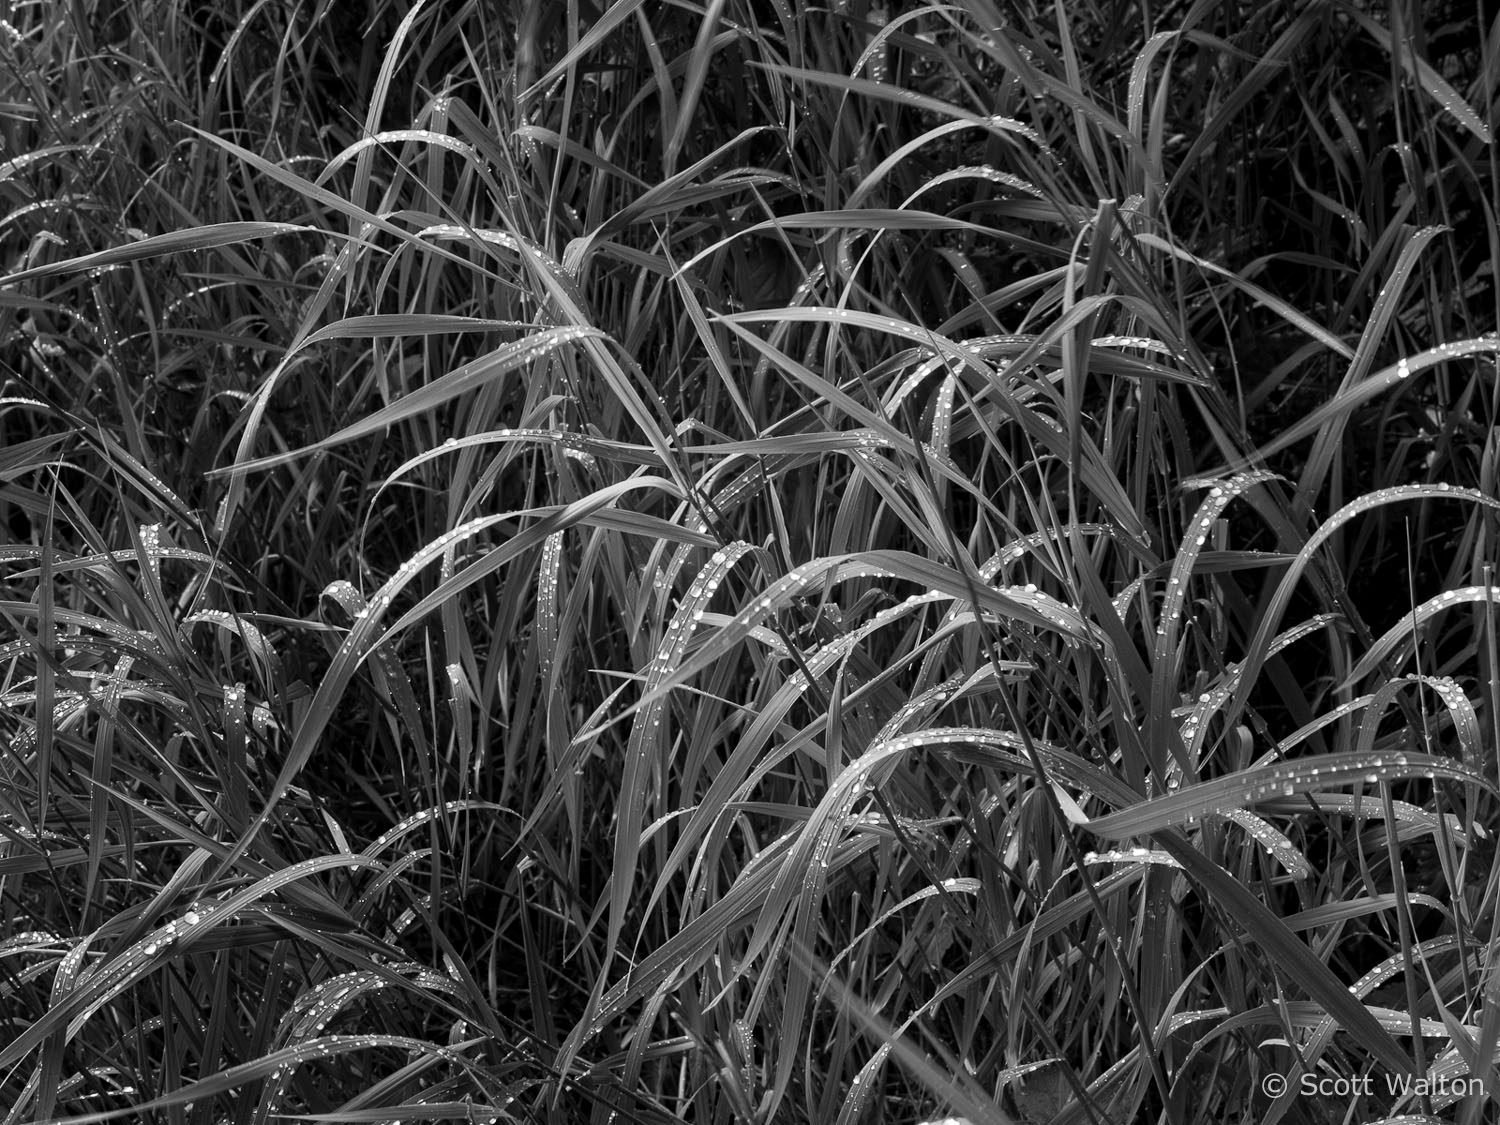 wet-grass-rockefeller-preserve-tetons.jpg